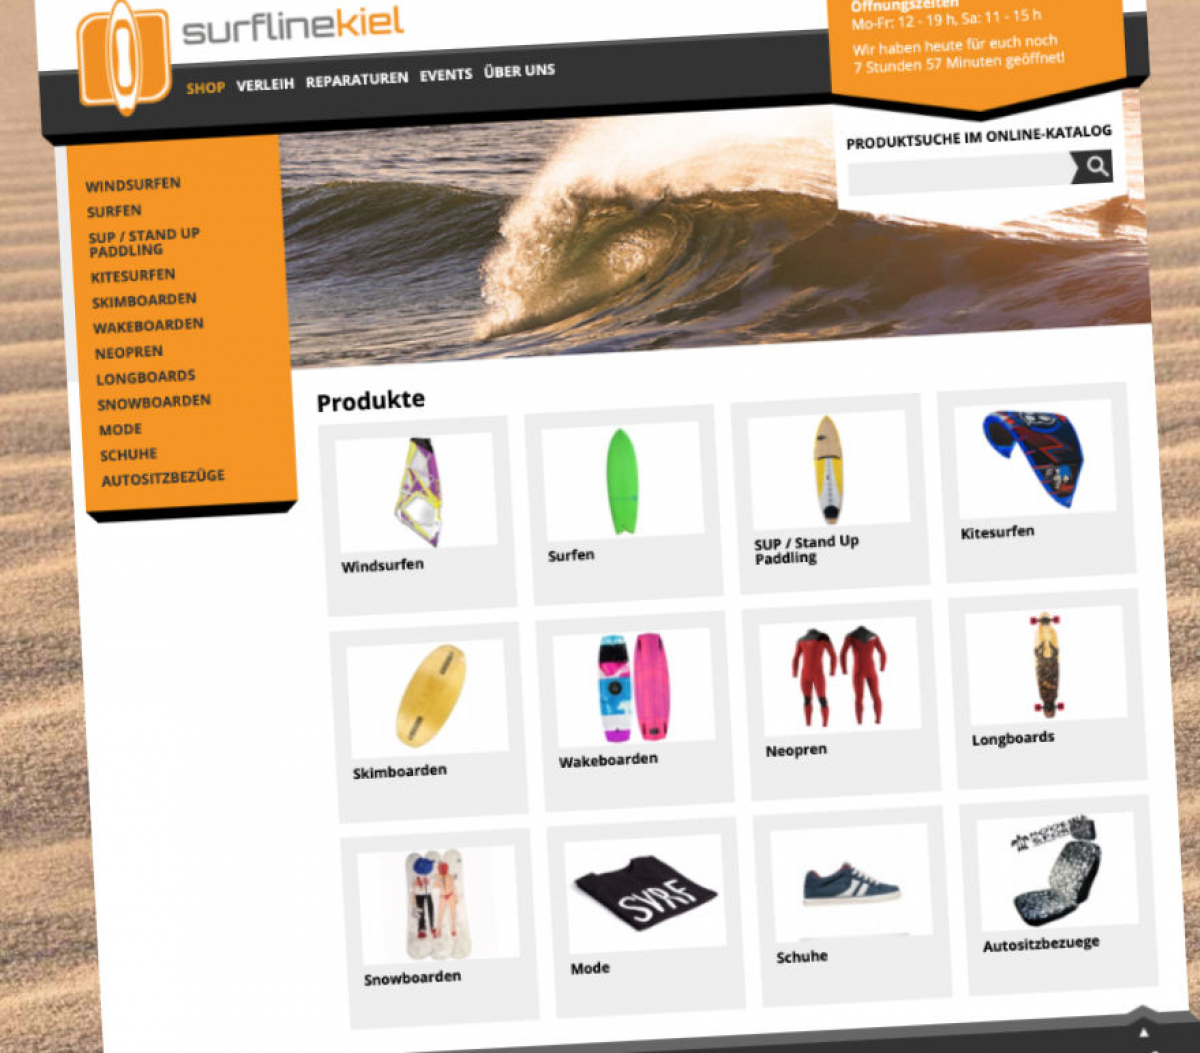 Saufen & Kaufen - Surfline Kiel